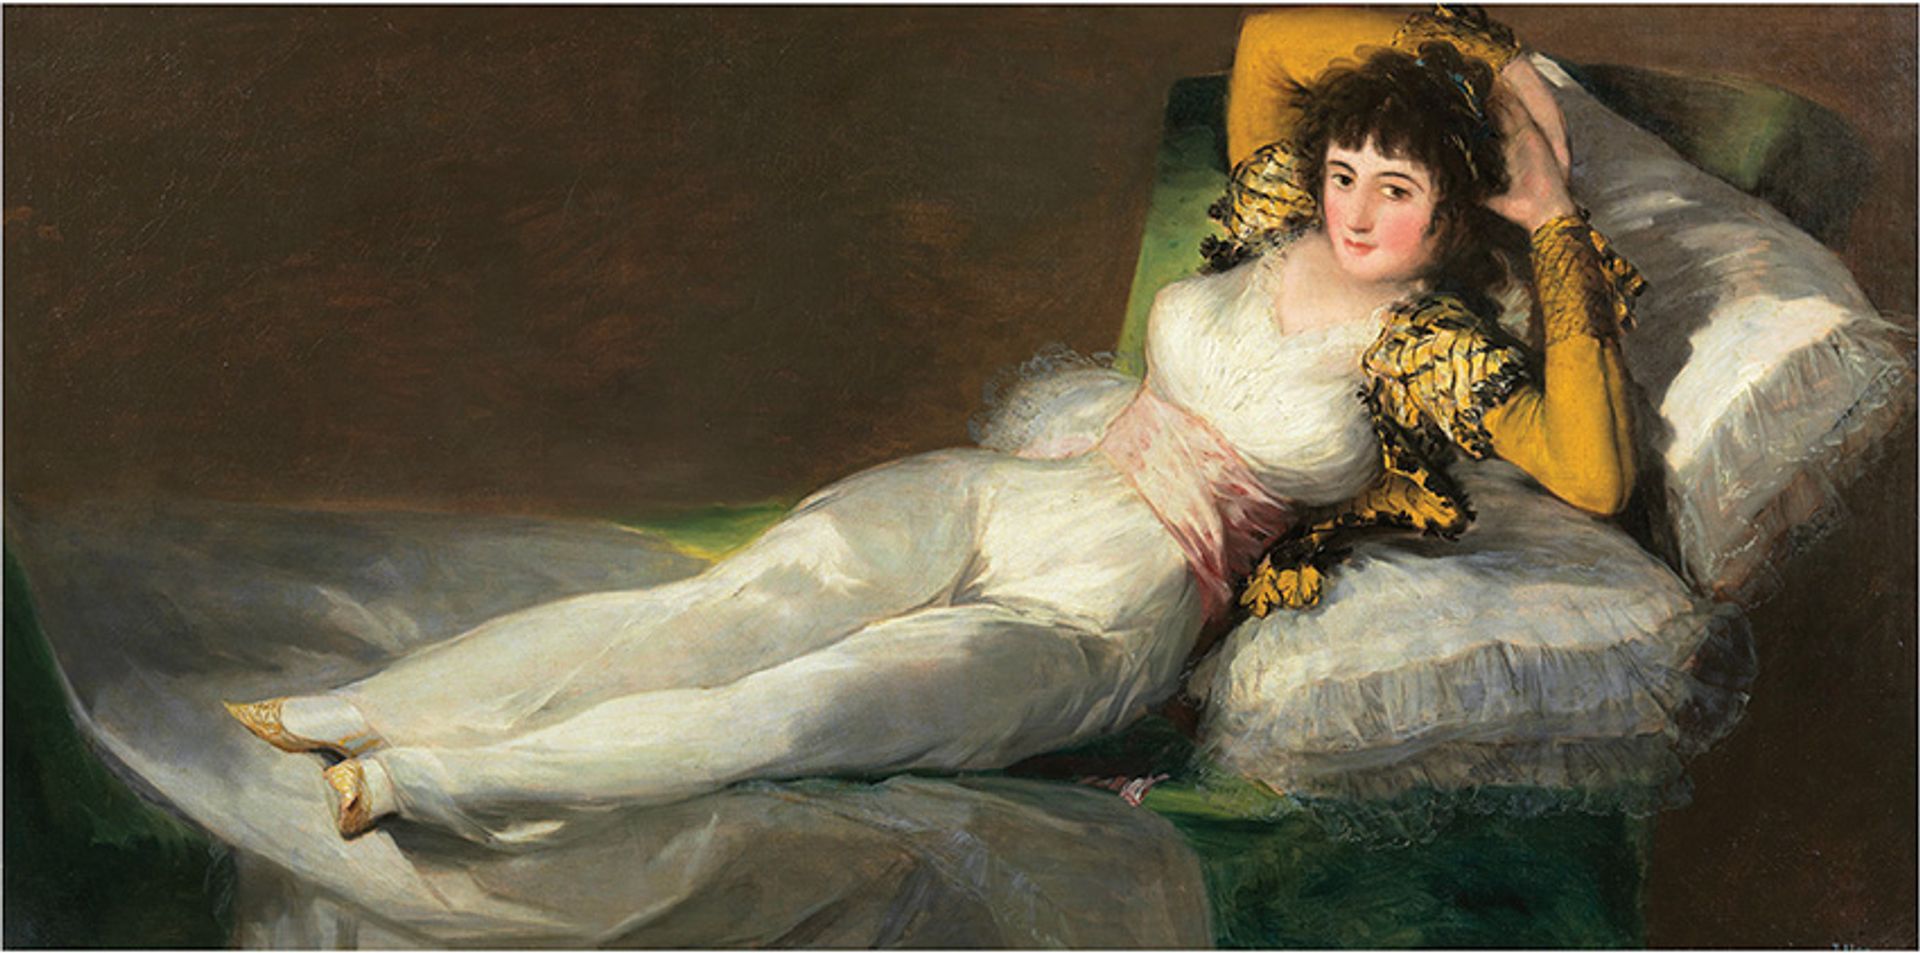 弗朗西斯科·德·戈雅(Francisco de Goya)的《衣著的玛雅》(The dressed Maja, 1800-07)将在贝耶勒美术馆展出，由普拉多国家博物馆提供